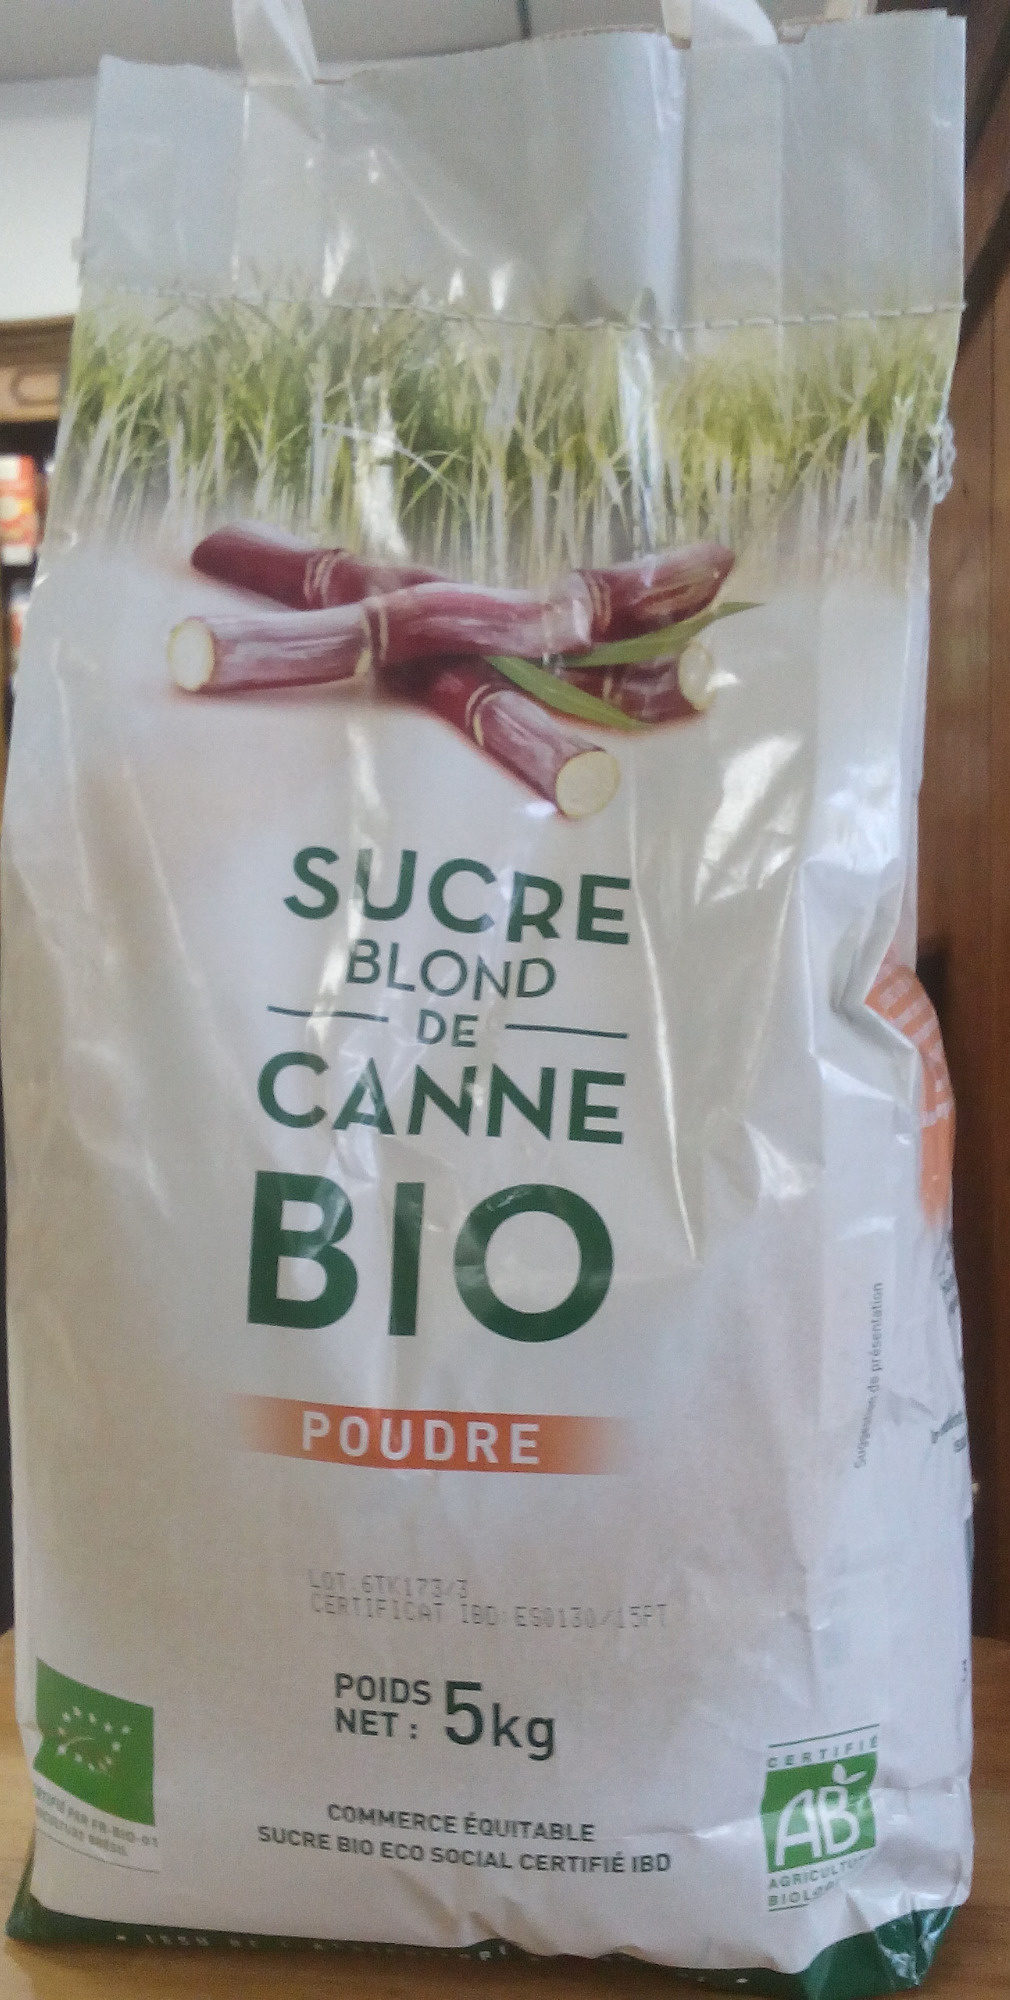 Sucre Blond de Canne Bio - Product - fr